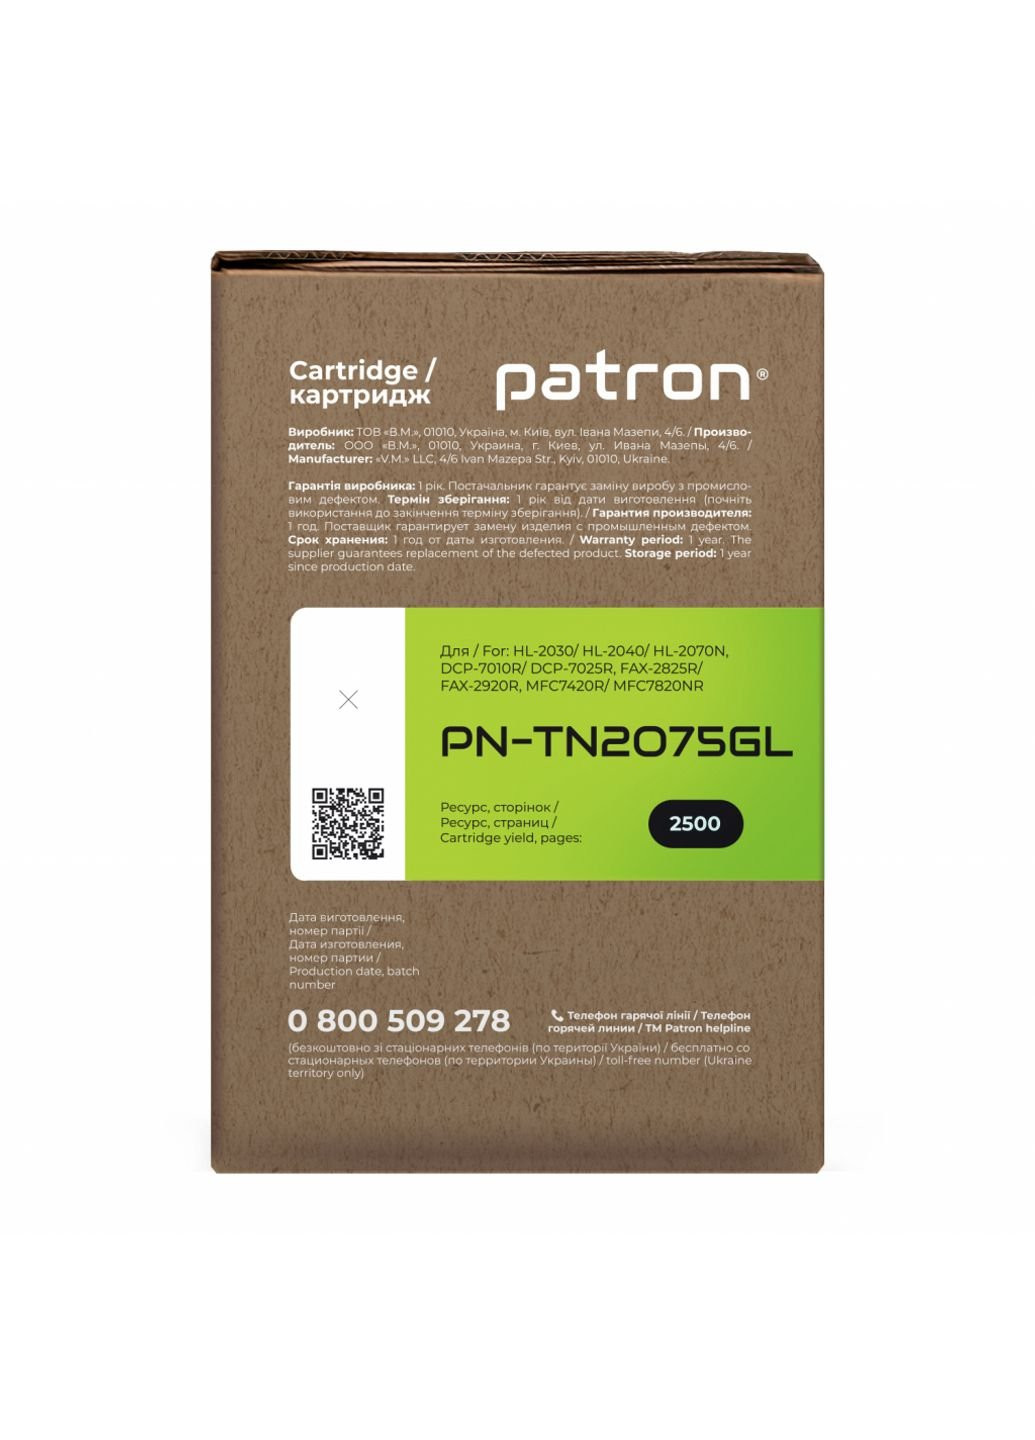 Тонер-картридж (PN-TN2075GL) Patron brother tn-2075 green label (247619030)